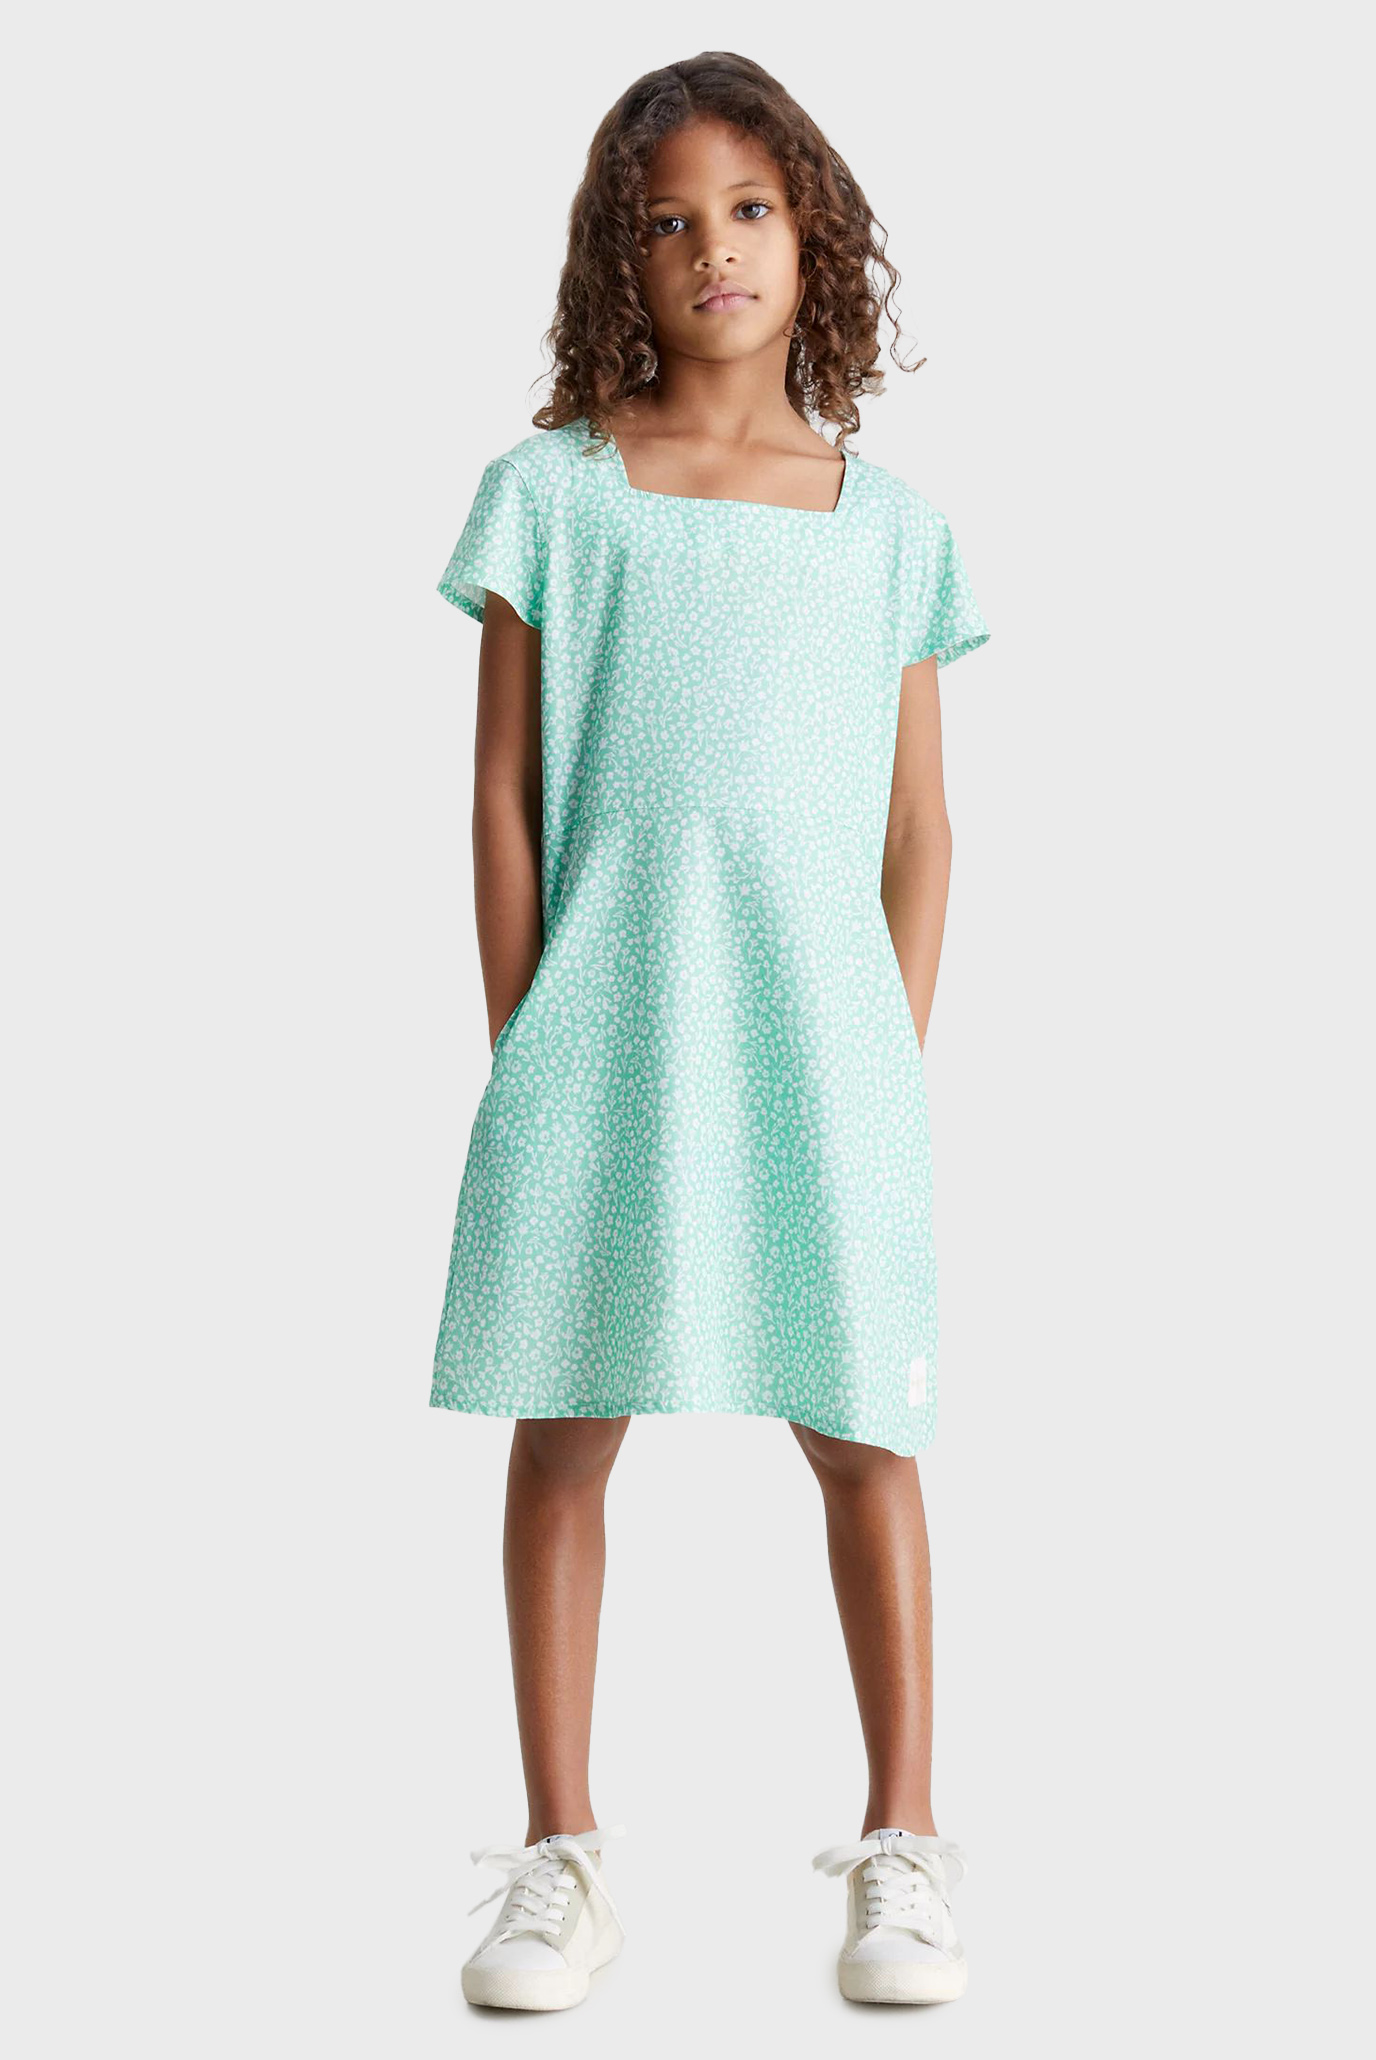 Дитяча зелена сукня з візерунком FLOWER AOP SS 1